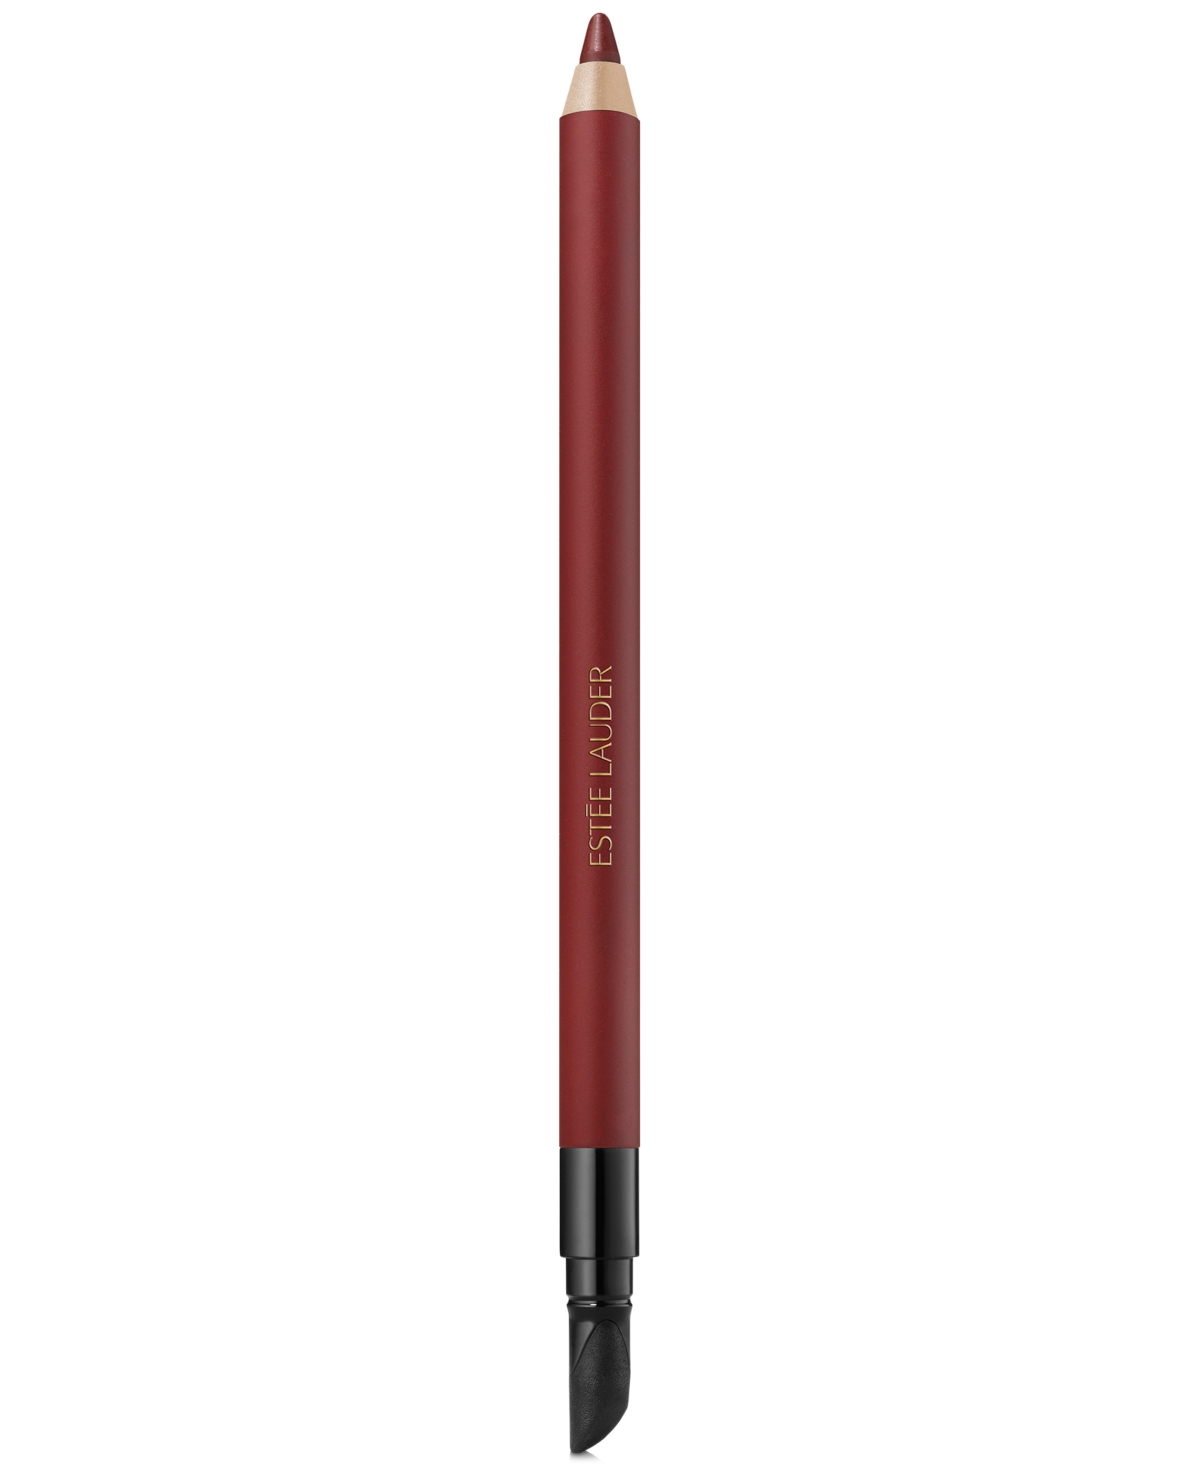 Double Wear 24H Waterproof Gel Eyeliner Pencil - Bronze